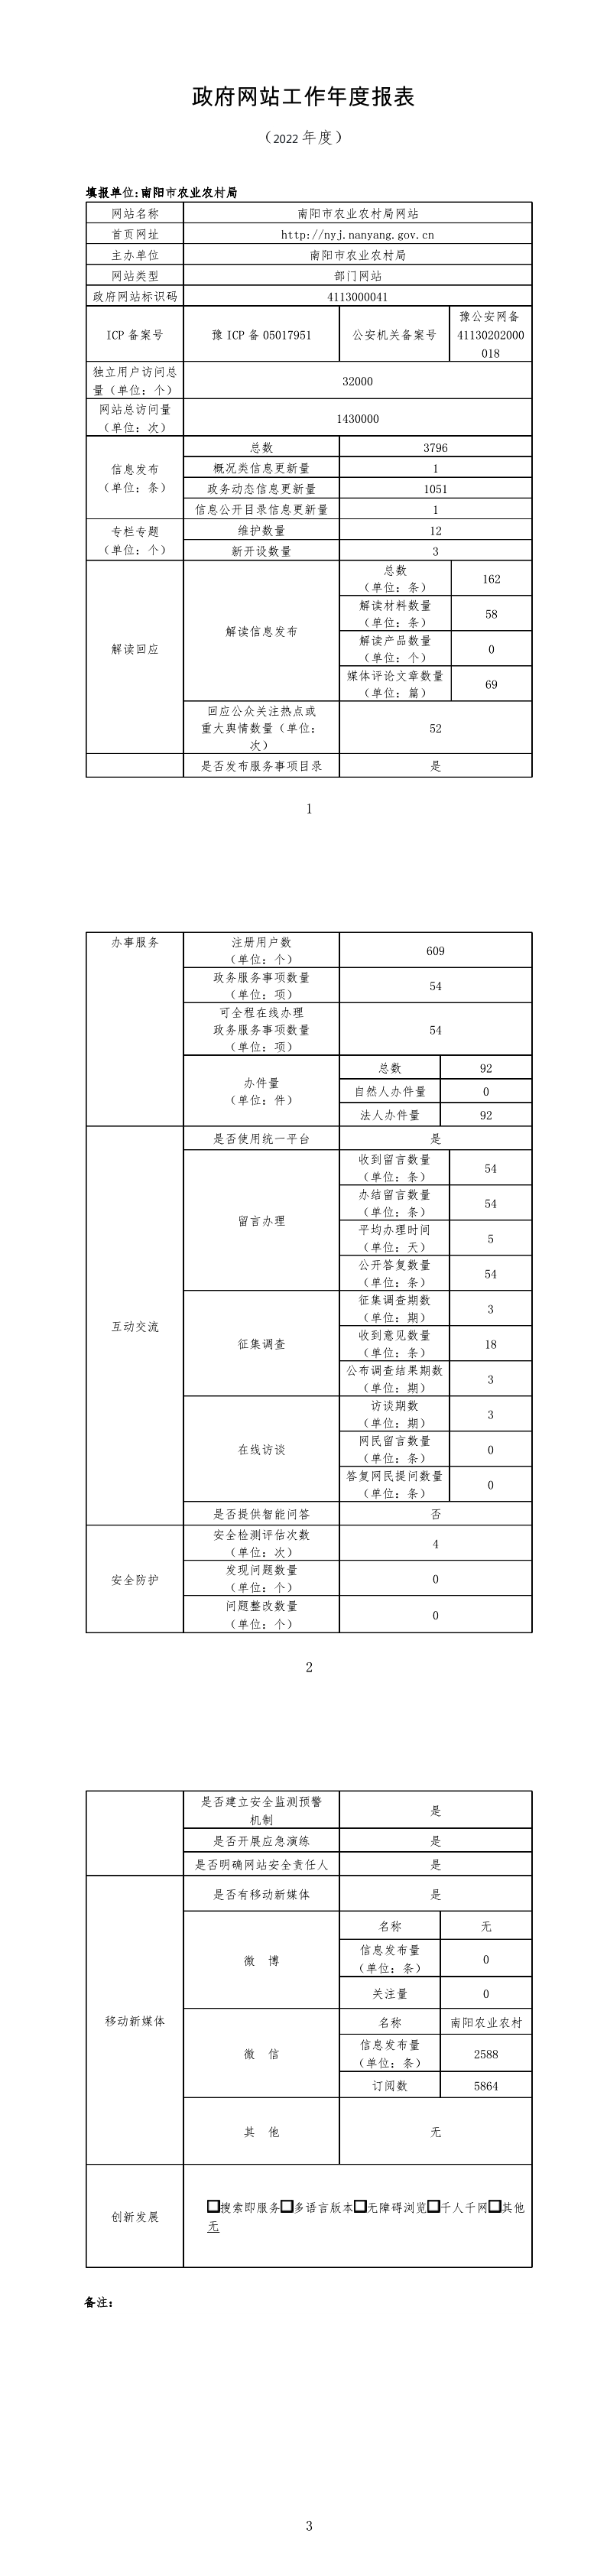 南阳市农业农村局政府网站工作2022年度报表